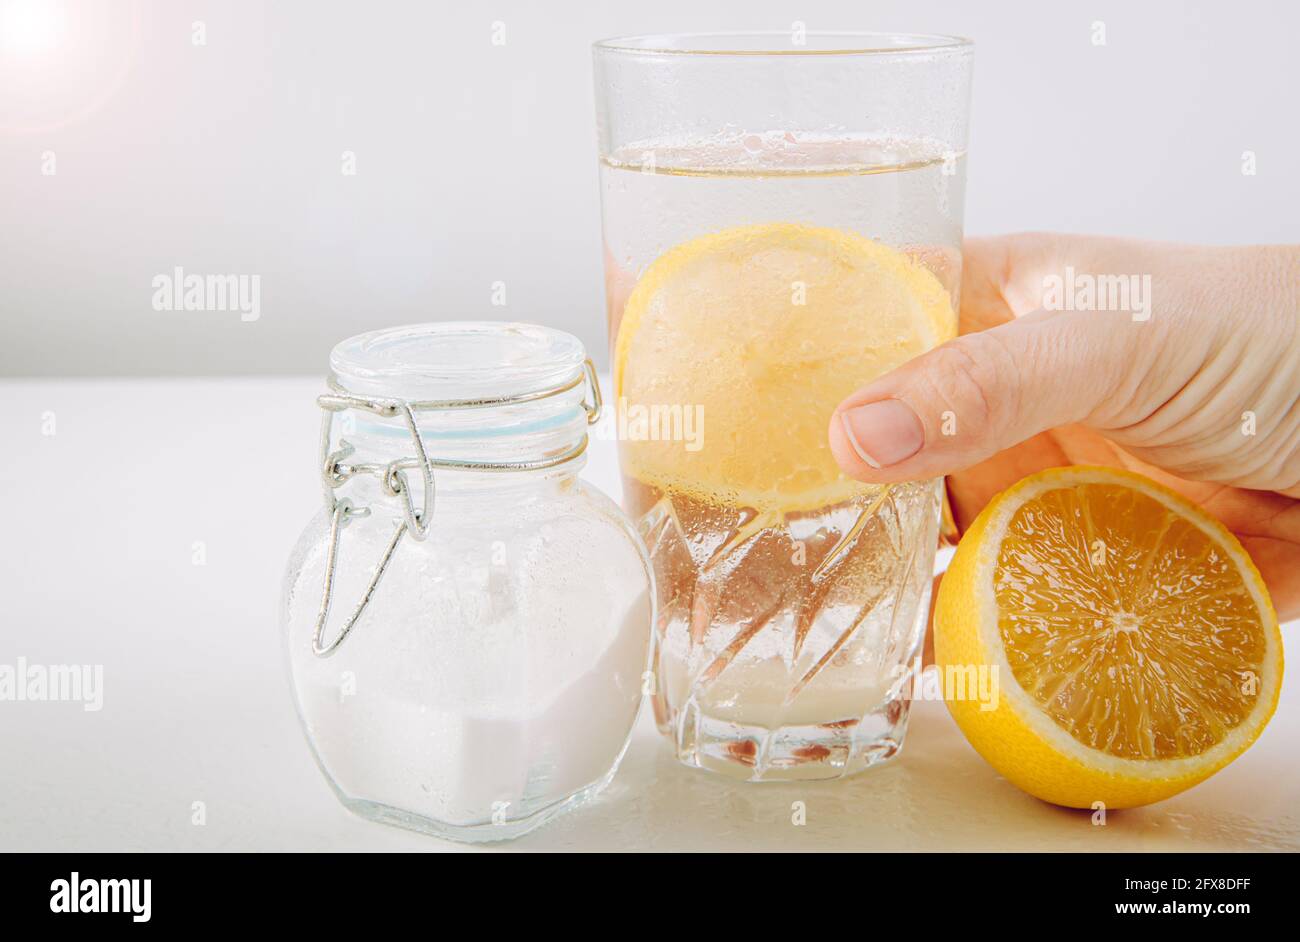 Hand halten Trinkglas mit Backpulver, Wasser und Zitronensaft Infusion, gesundheitliche Vorteile für das Verdauungssystem Konzept. Minimaler weißer Hintergrund. Stockfoto